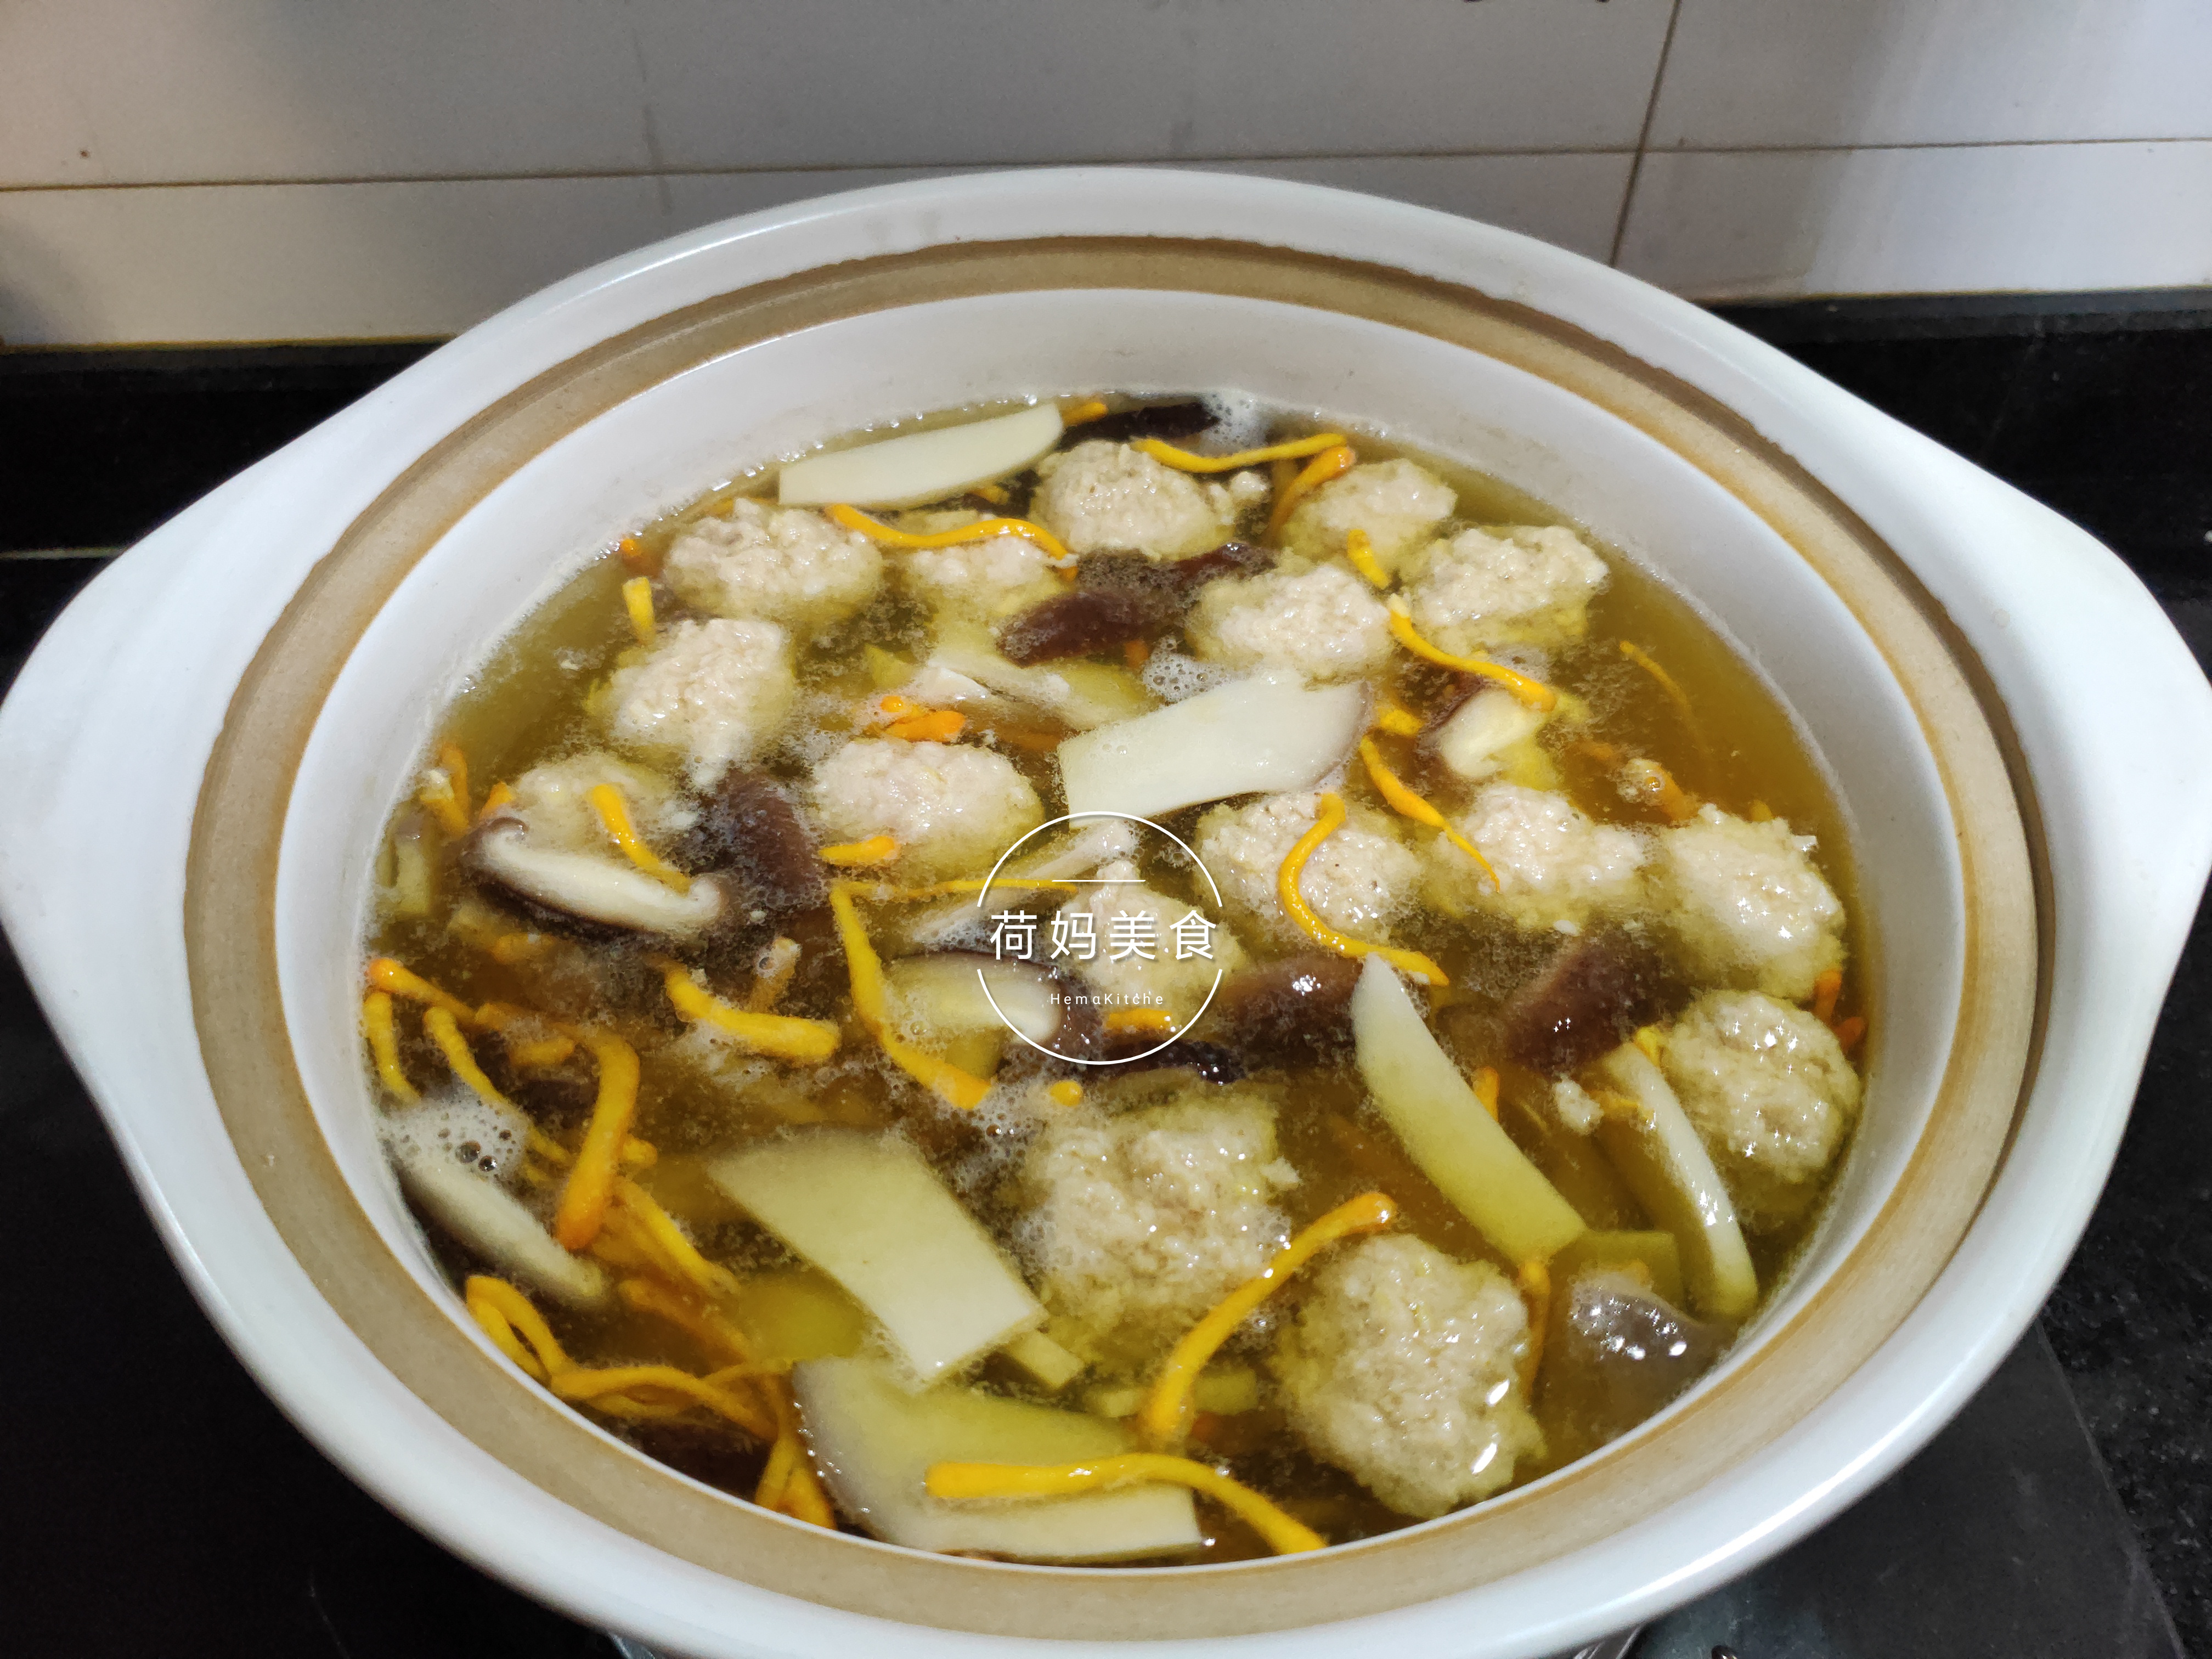 菌菇肉丸汤,营养丰富,鲜香好喝,一滴油都没放,煮一煮就上桌